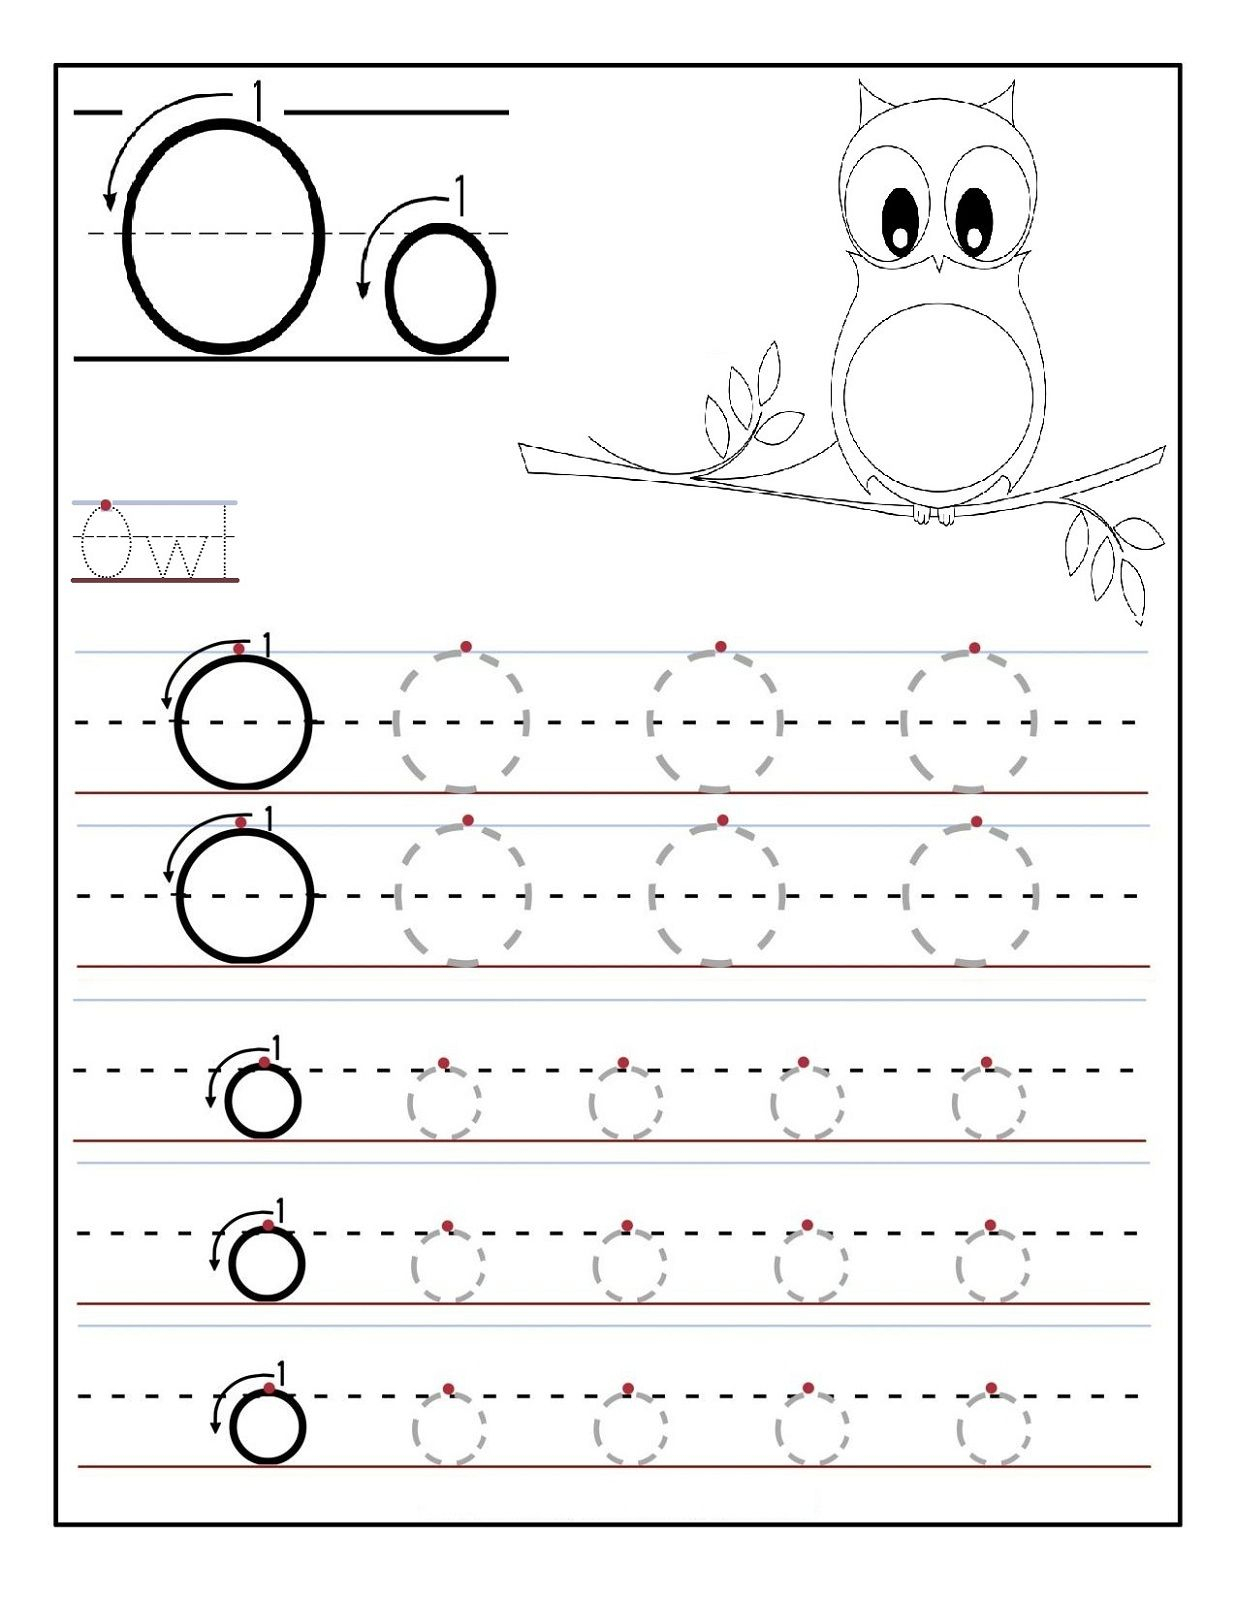 Letter O Worksheet Free | Letter O Worksheets, Tracing regarding Letter O Worksheets For Kindergarten Free